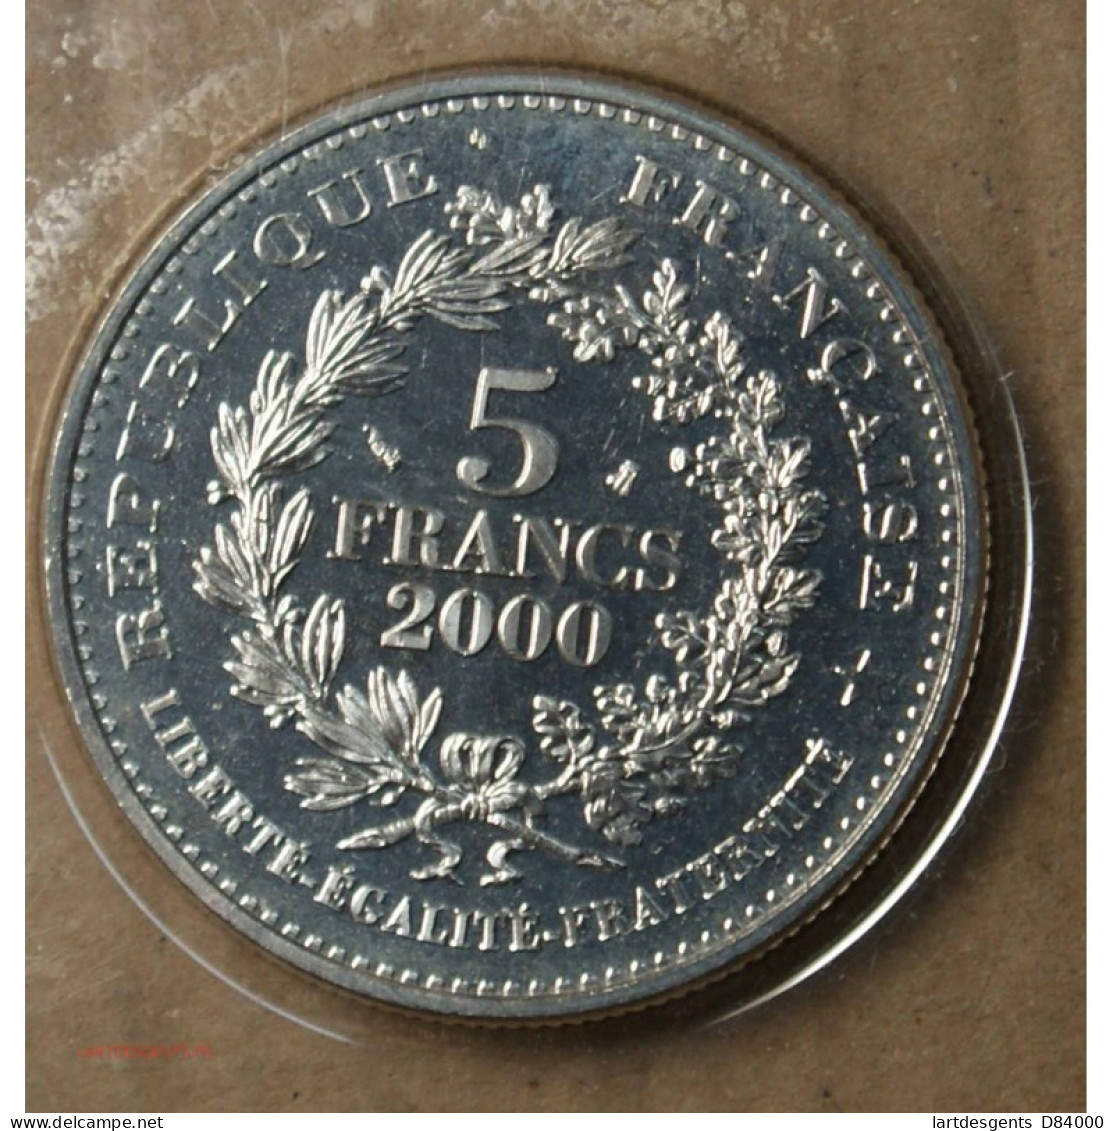 FRANCE, 5 Francs 2000 LE FRANC D'HENRI III FDC. Lartdesgents.fr - 1/4 Franc